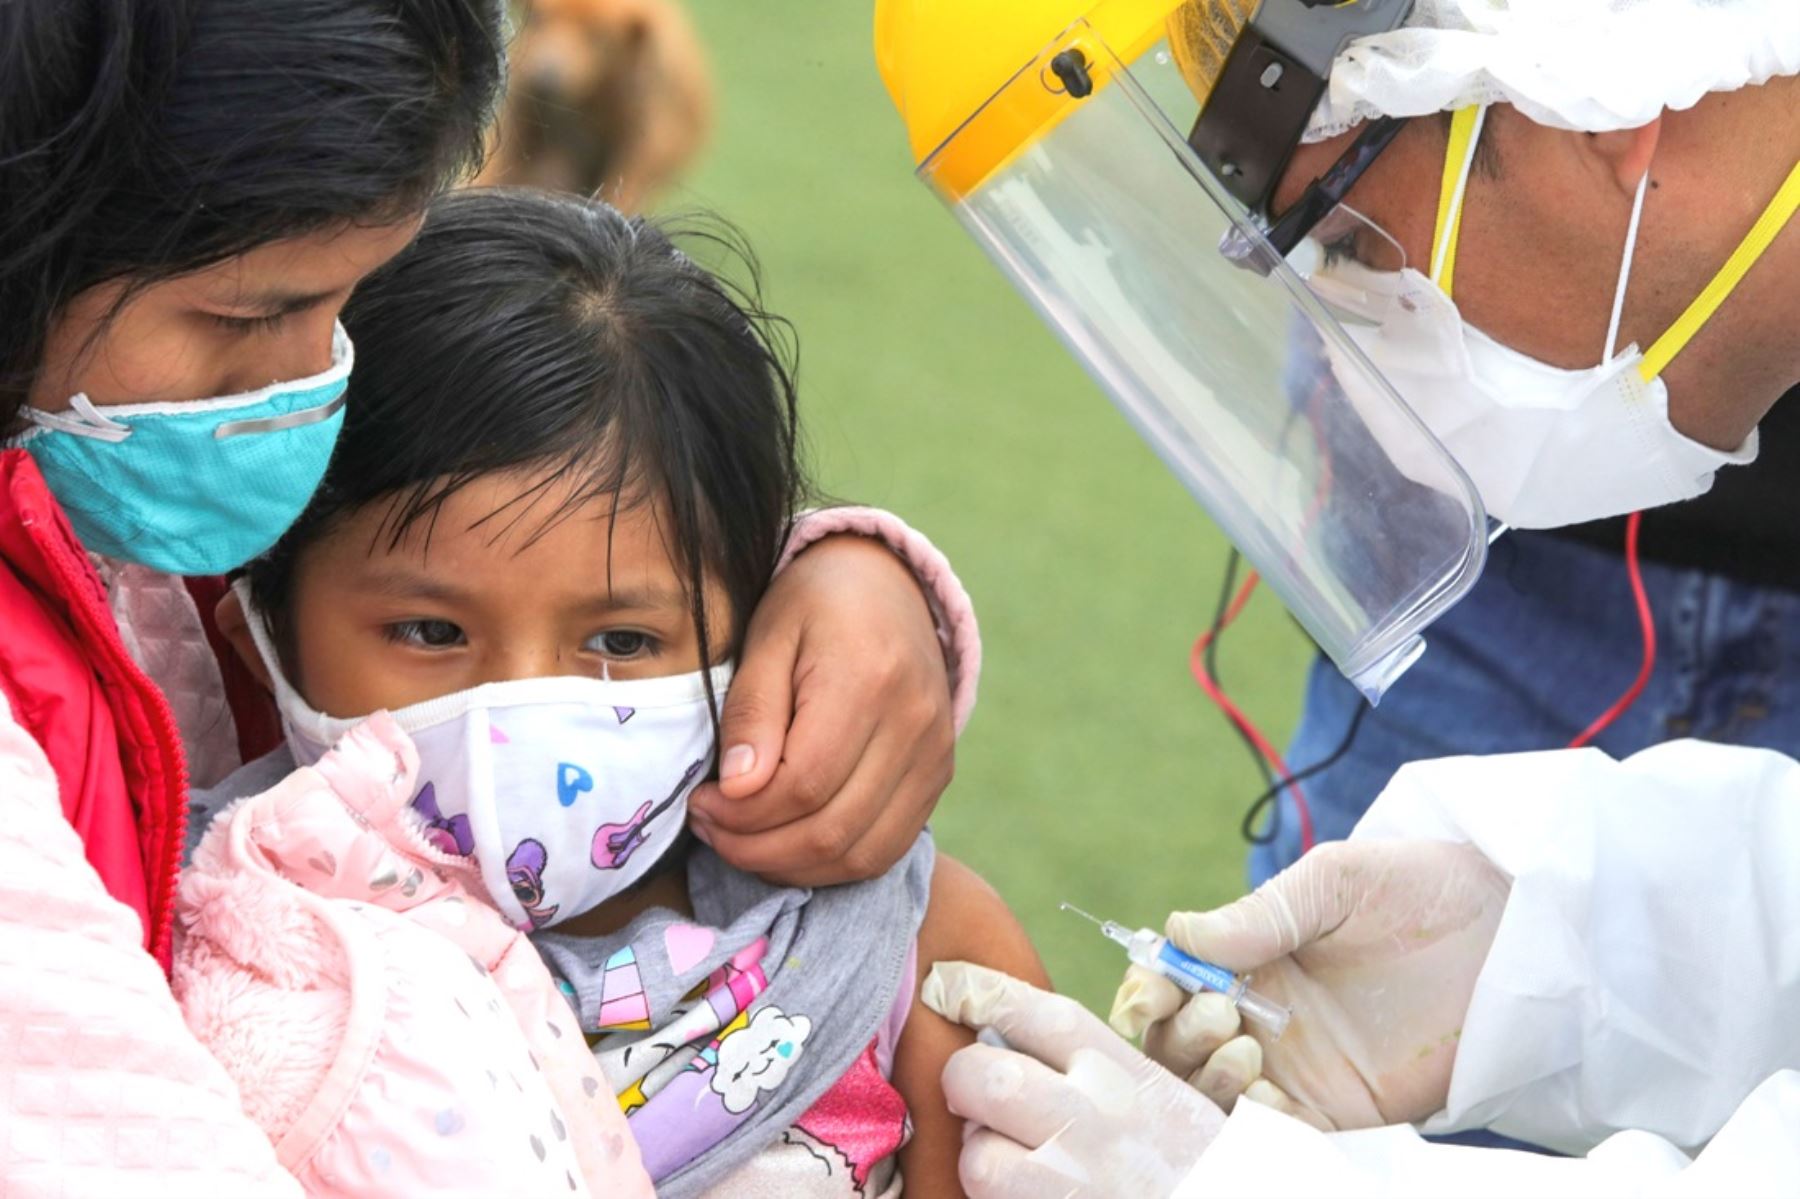 Los niños y niñas con covid-19 leve pueden ser atendidos en casa como se trata un resfriado común, afirma especialista del Instituto Nacional de Salud del Niño de Breña. Foto: ANDINA/Andina.